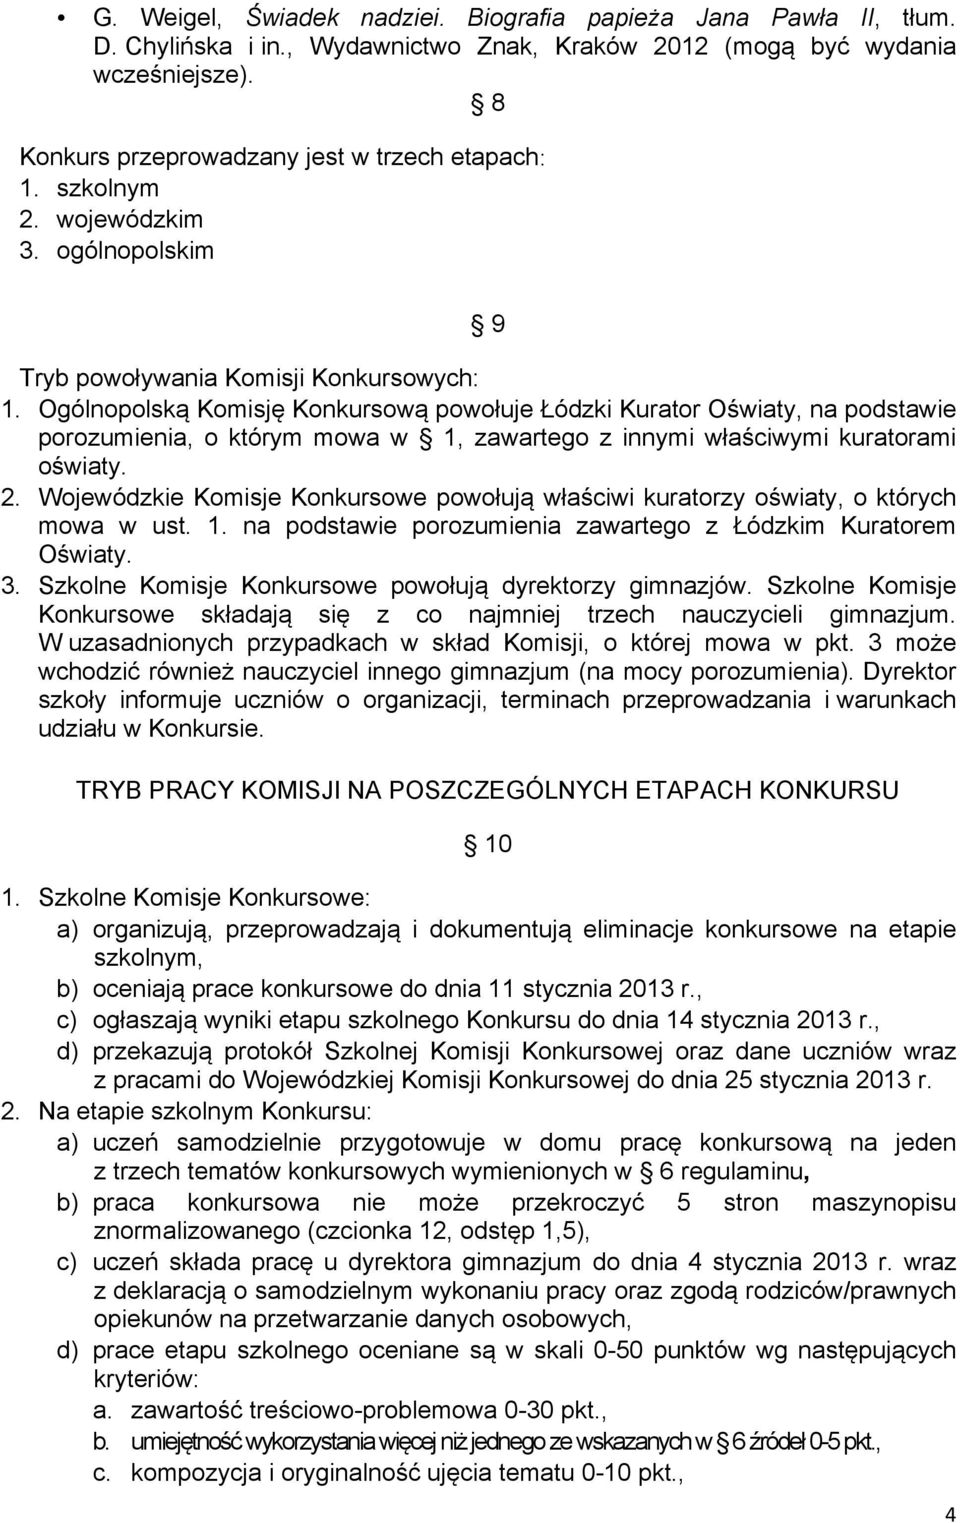 Ogólnopolską Komisję Konkursową powołuje Łódzki Kurator Oświaty, na podstawie porozumienia, o którym mowa w 1, zawartego z innymi właściwymi kuratorami oświaty. 2.